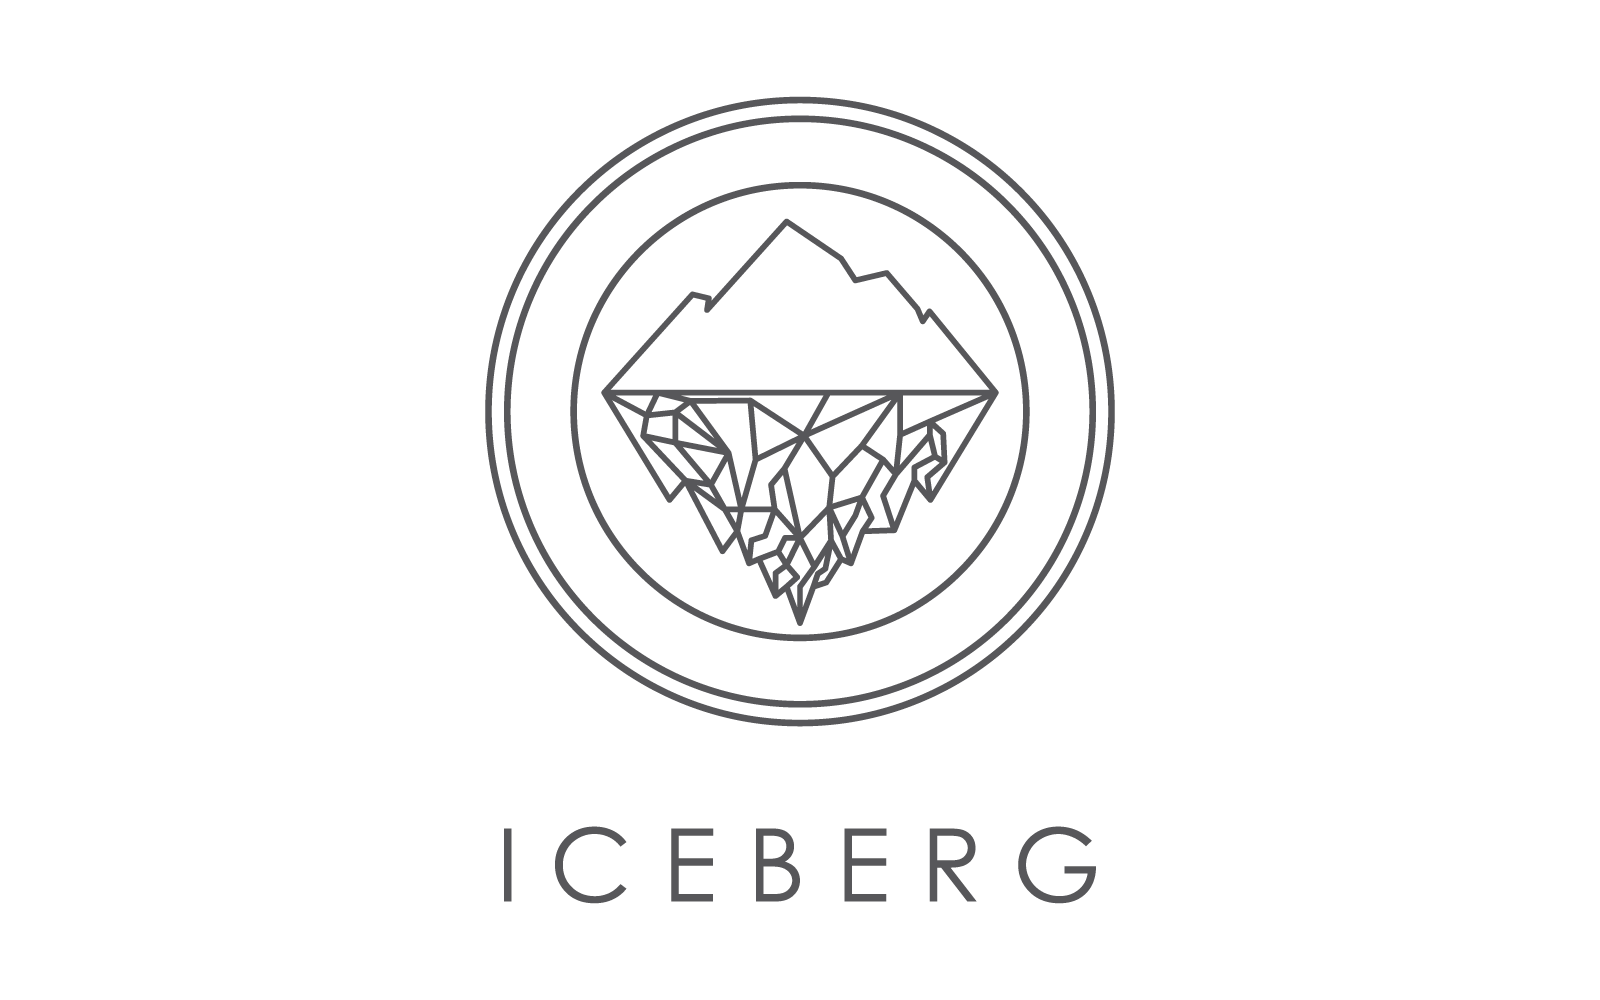 Iceberg line illustration logo vector design